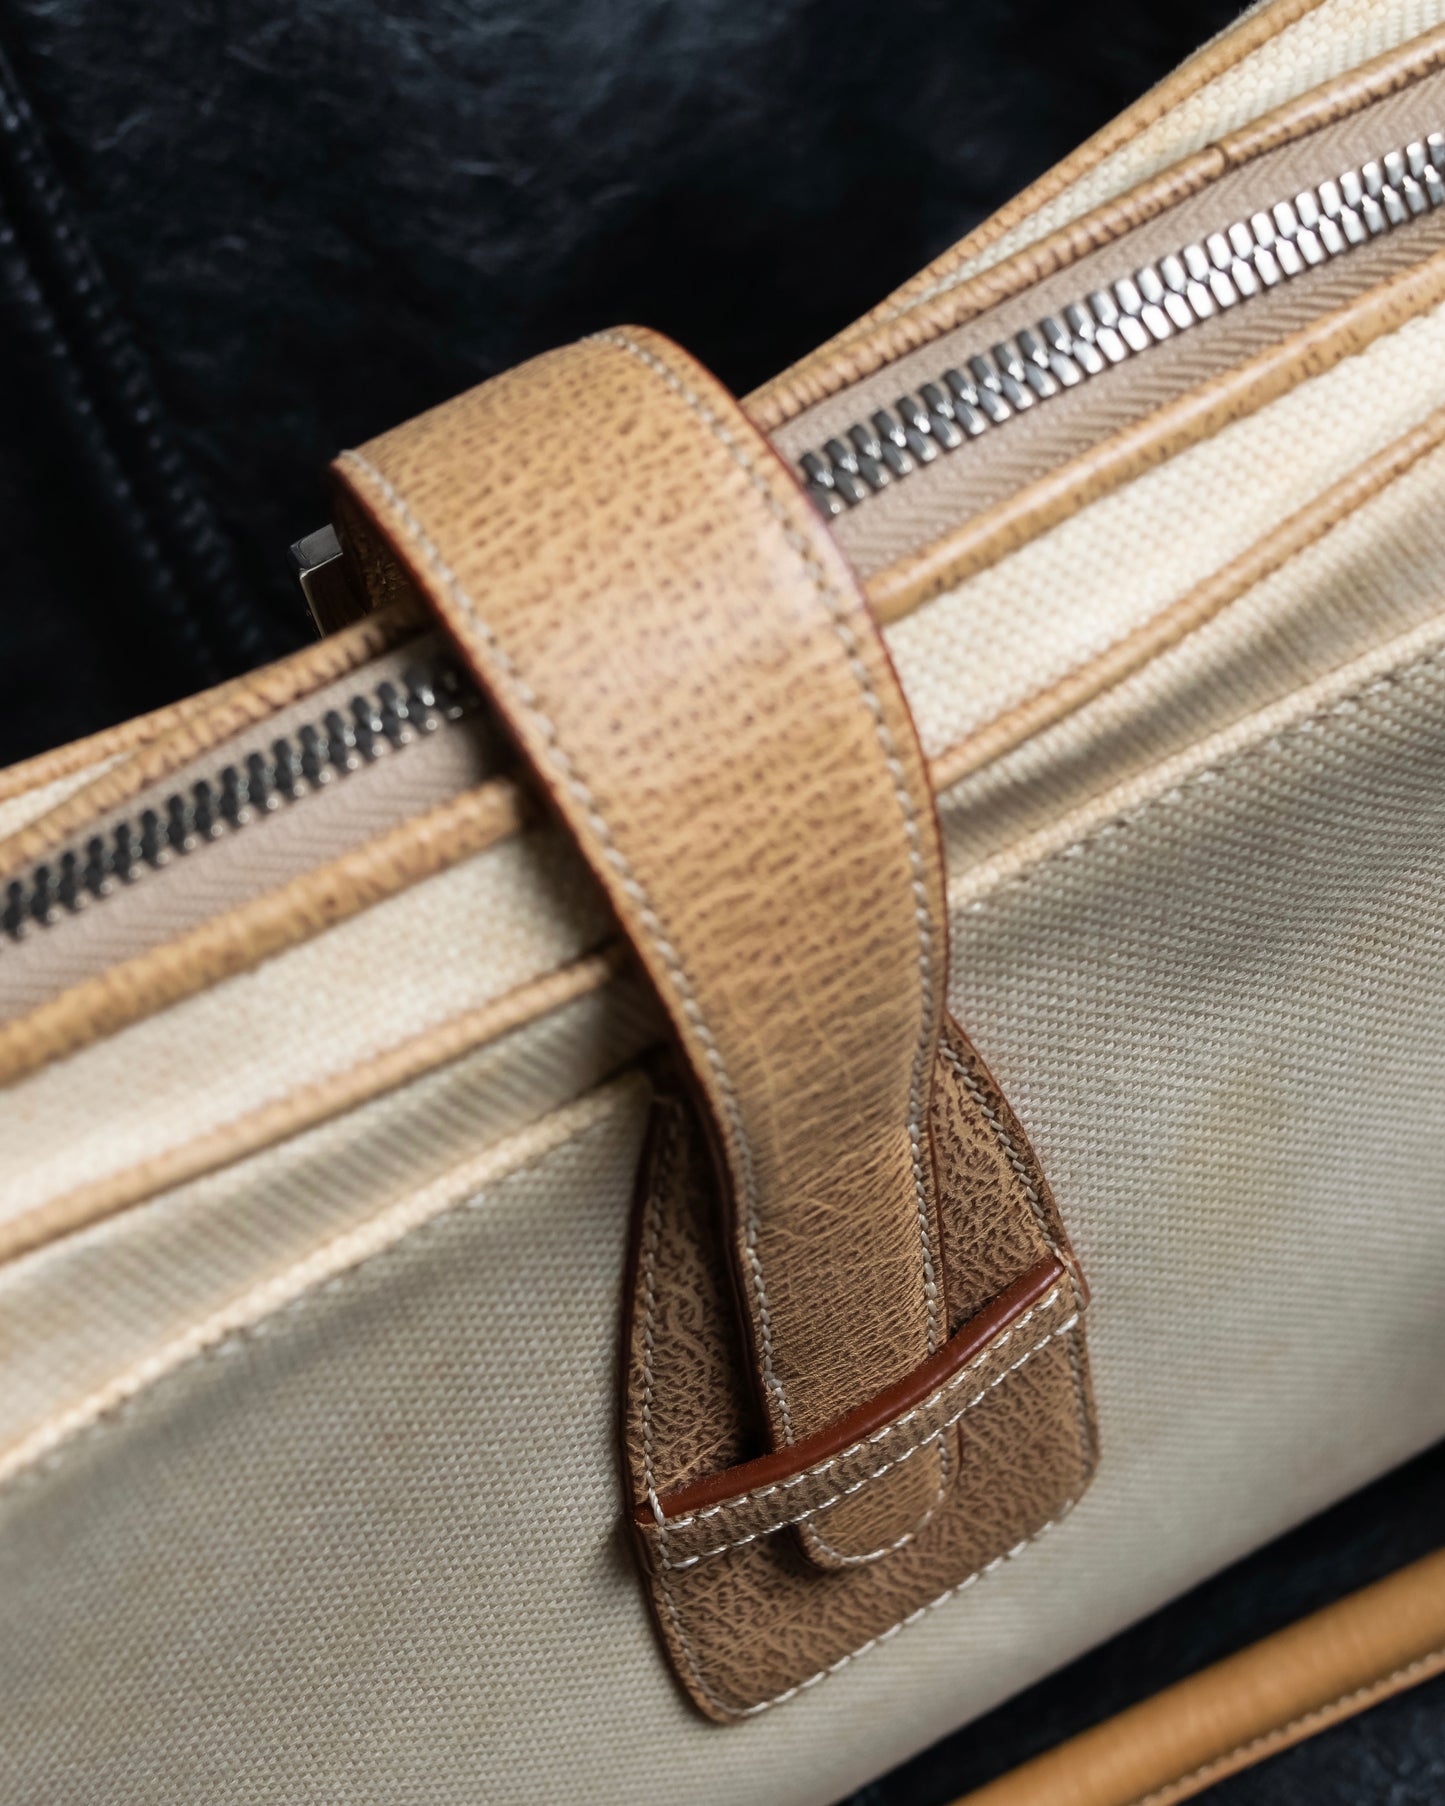 “LOEWE” Leather belted design bicolor hand bag